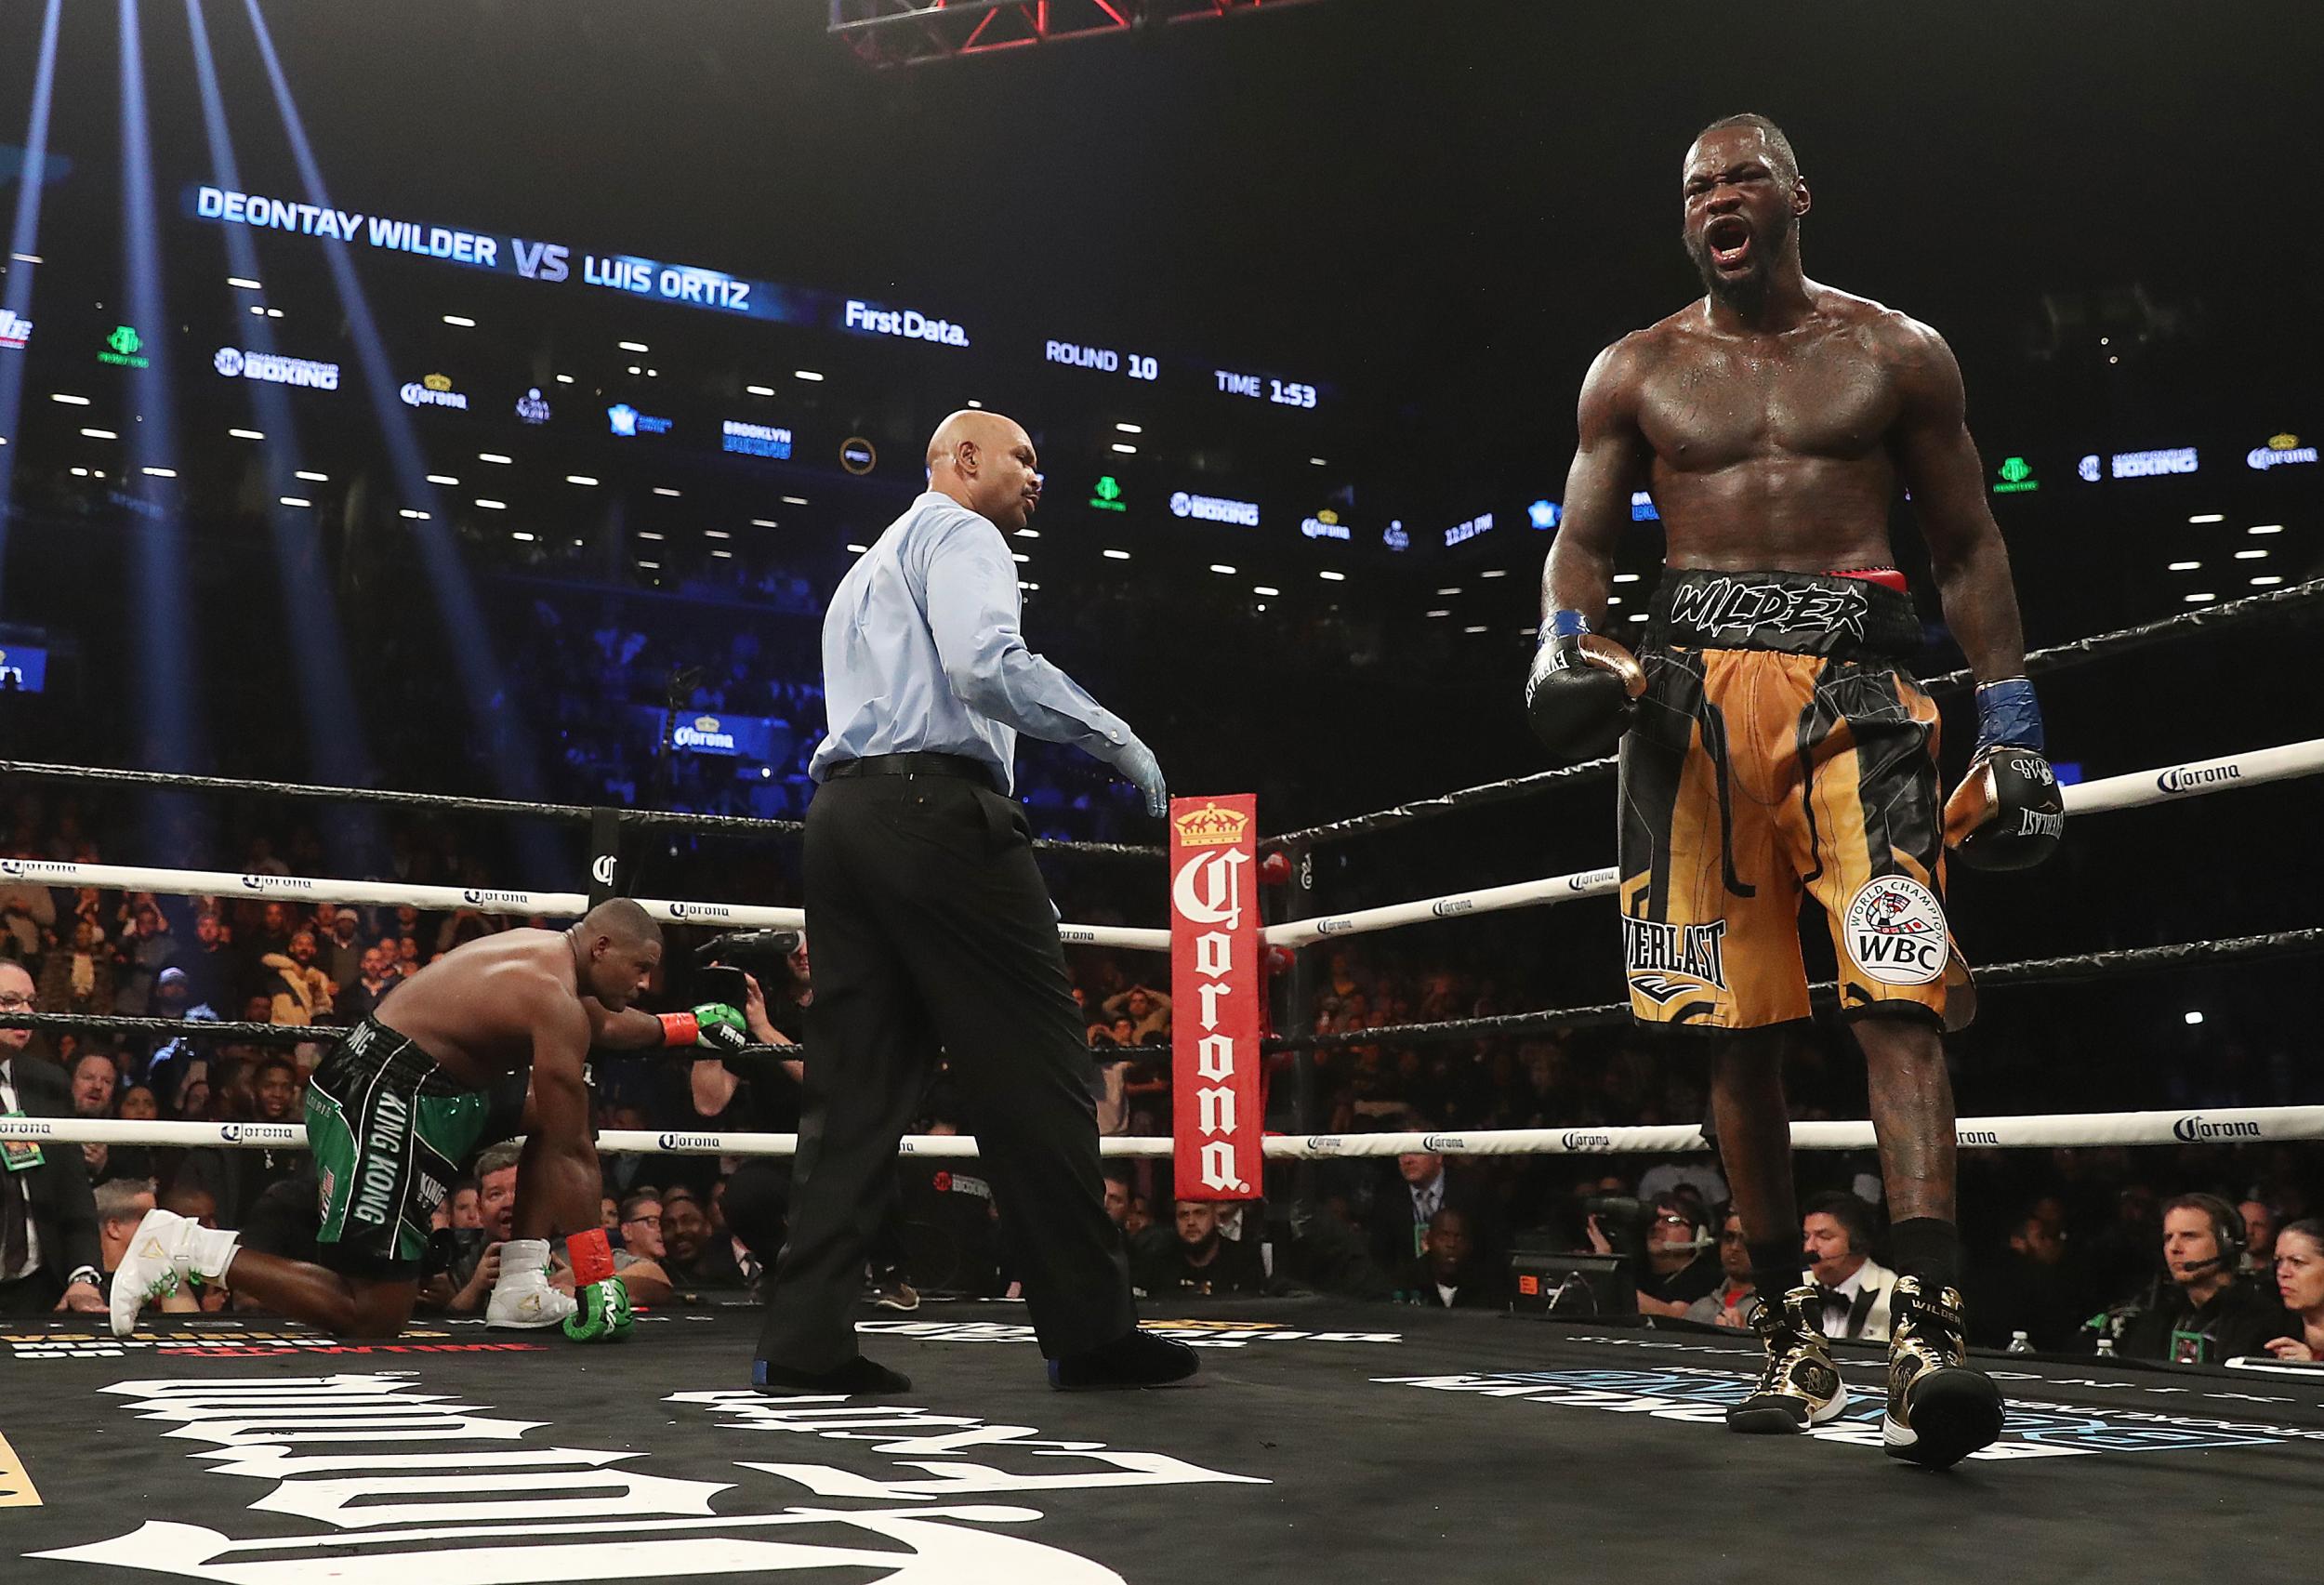 Wilder remains unbeaten as a heavyweight boxer